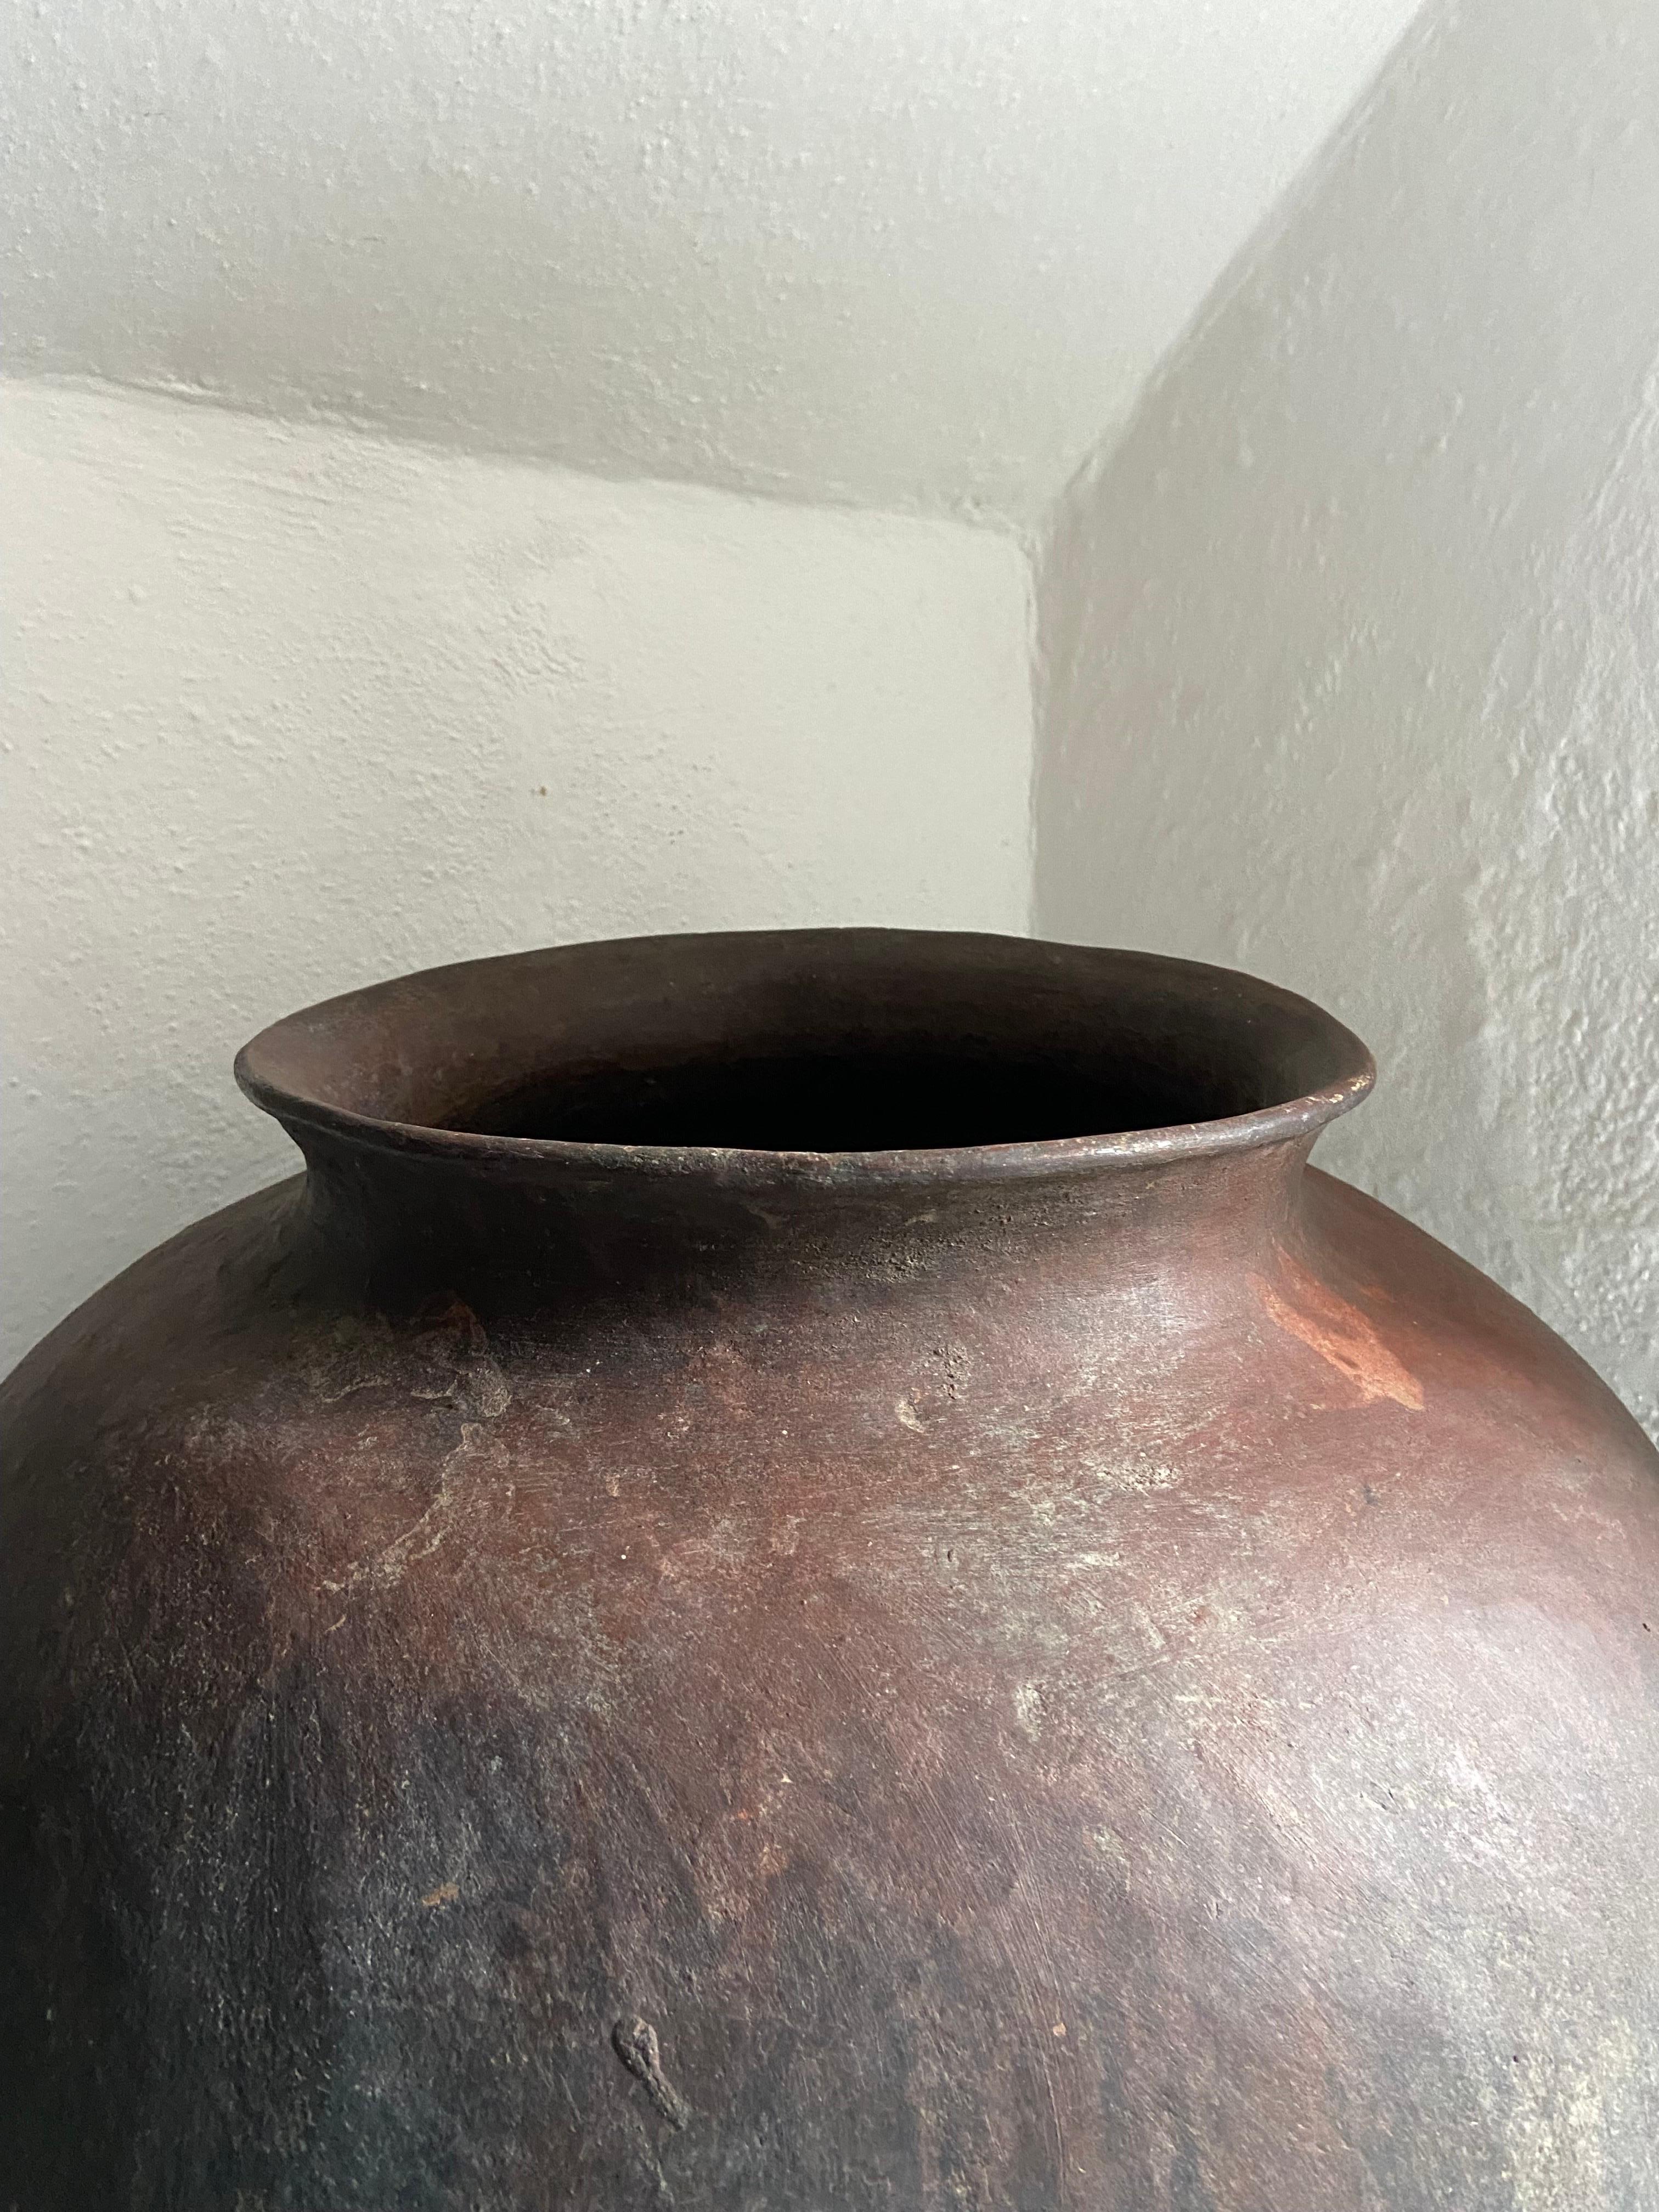 Ceramic Mid-20th Century Pot from Mexico